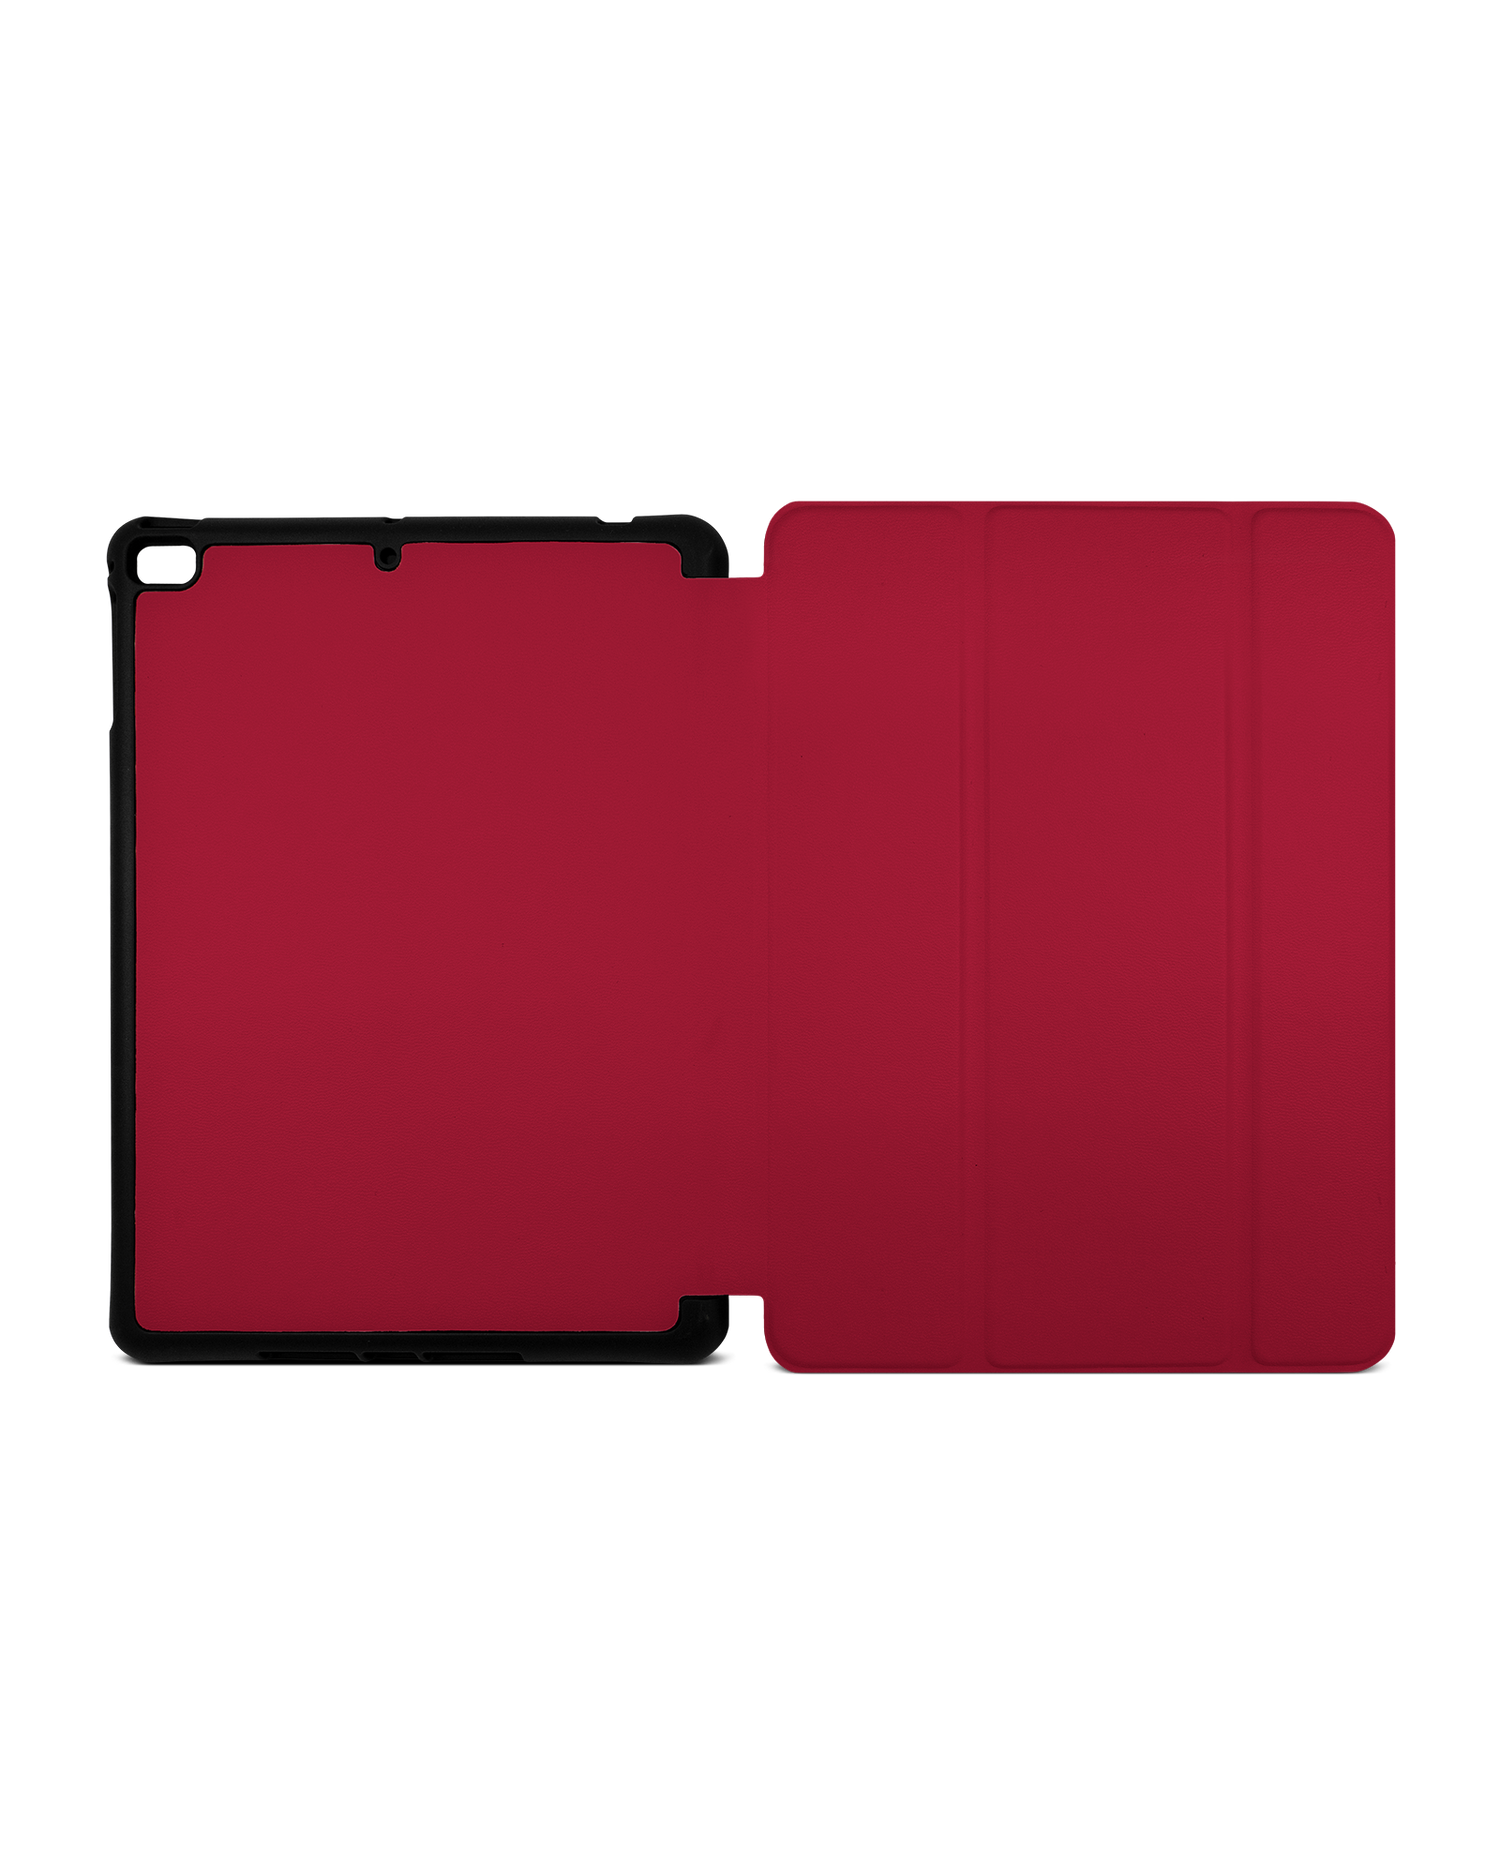 RED iPad Hülle mit Stifthalter Apple iPad mini 5 (2019): Geöffnet Außenansicht